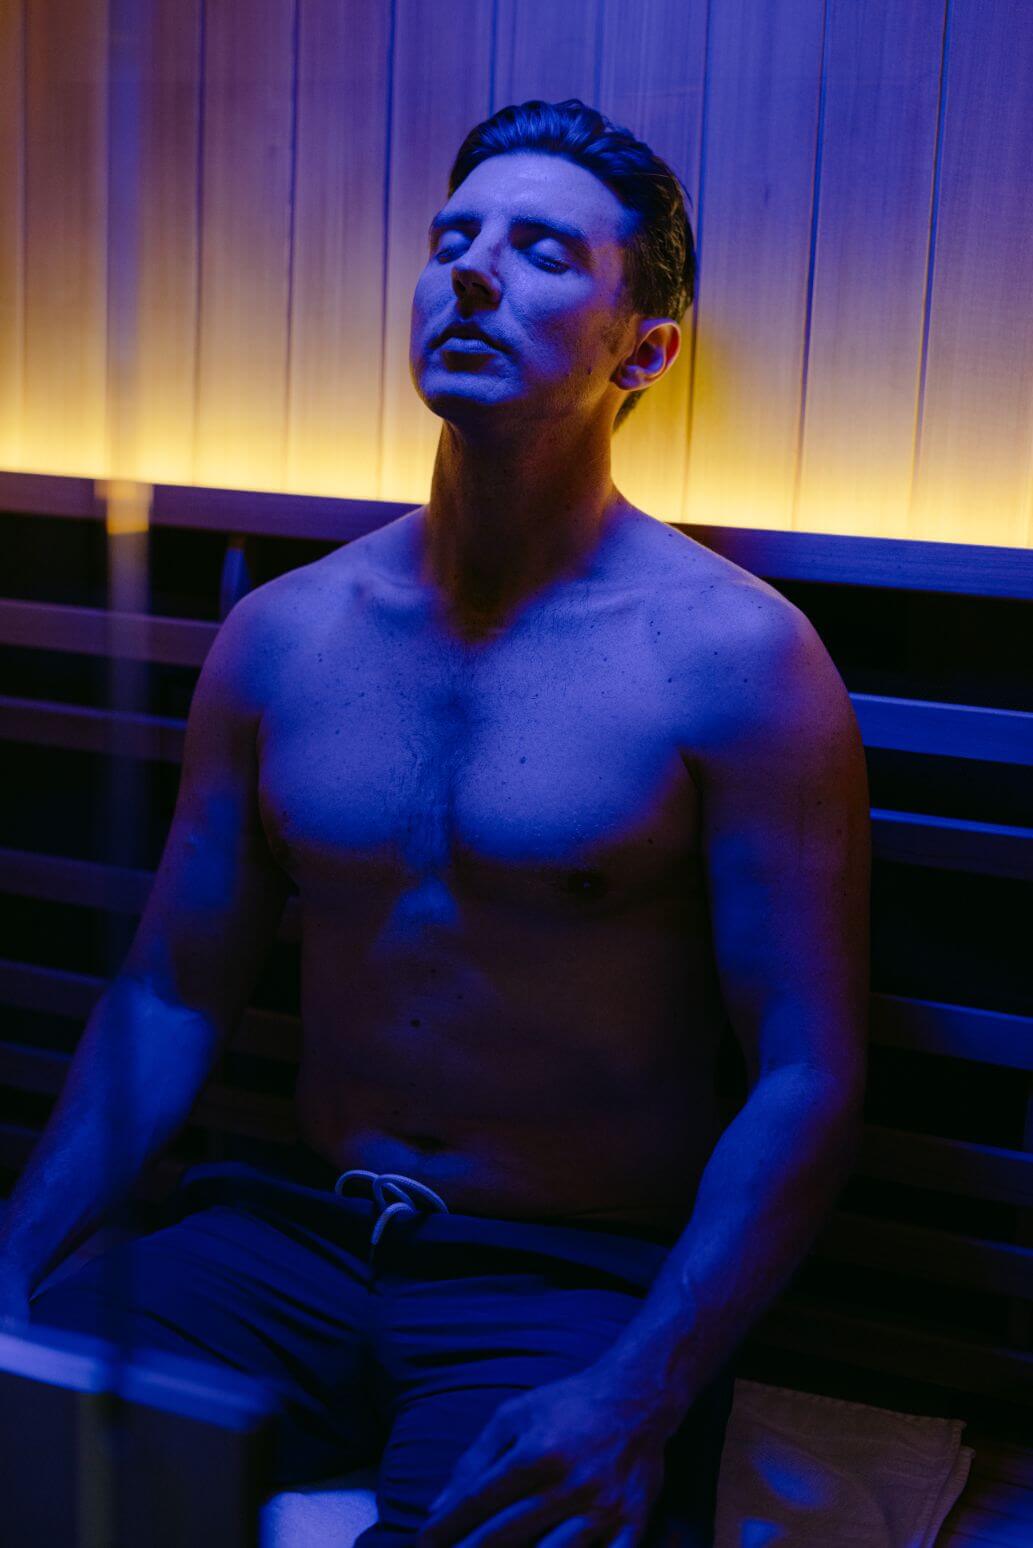 Man enjoying his infrared sauna session.